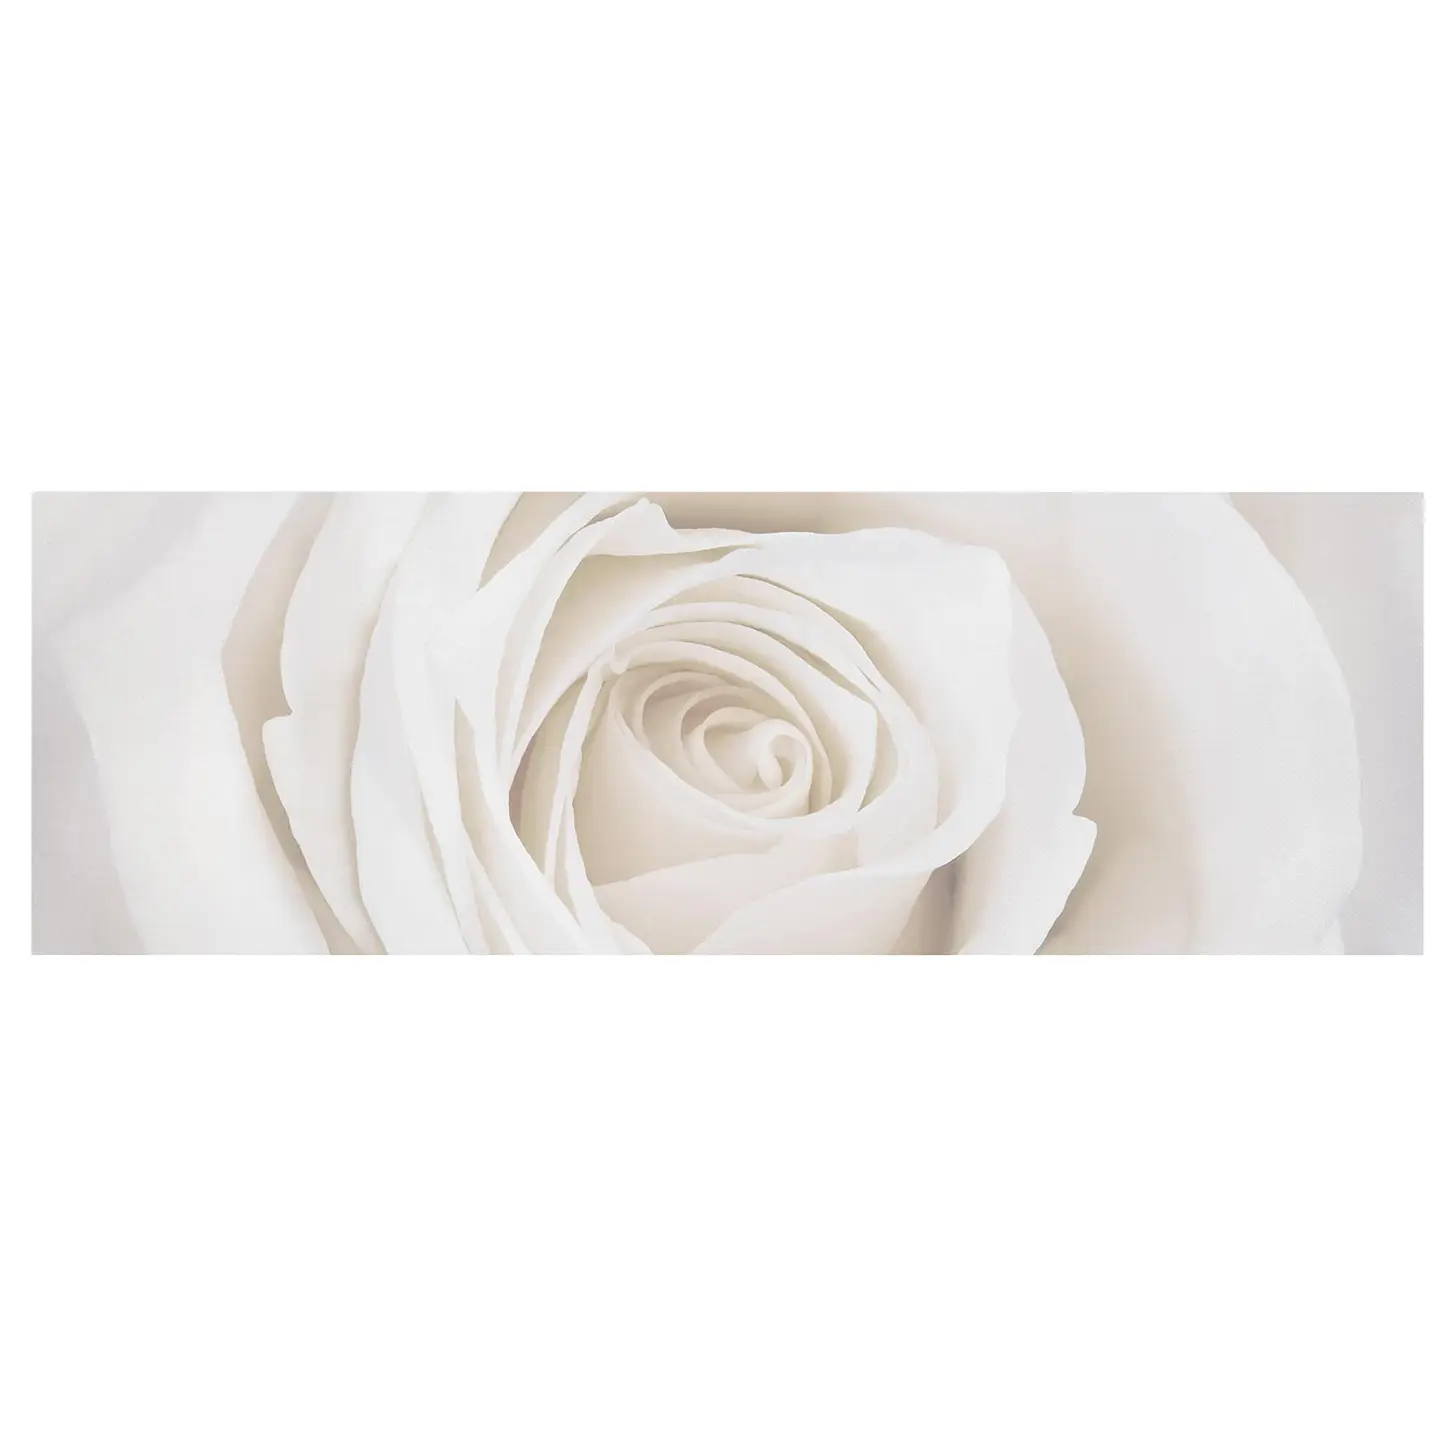 Bild Pretty White Rose I